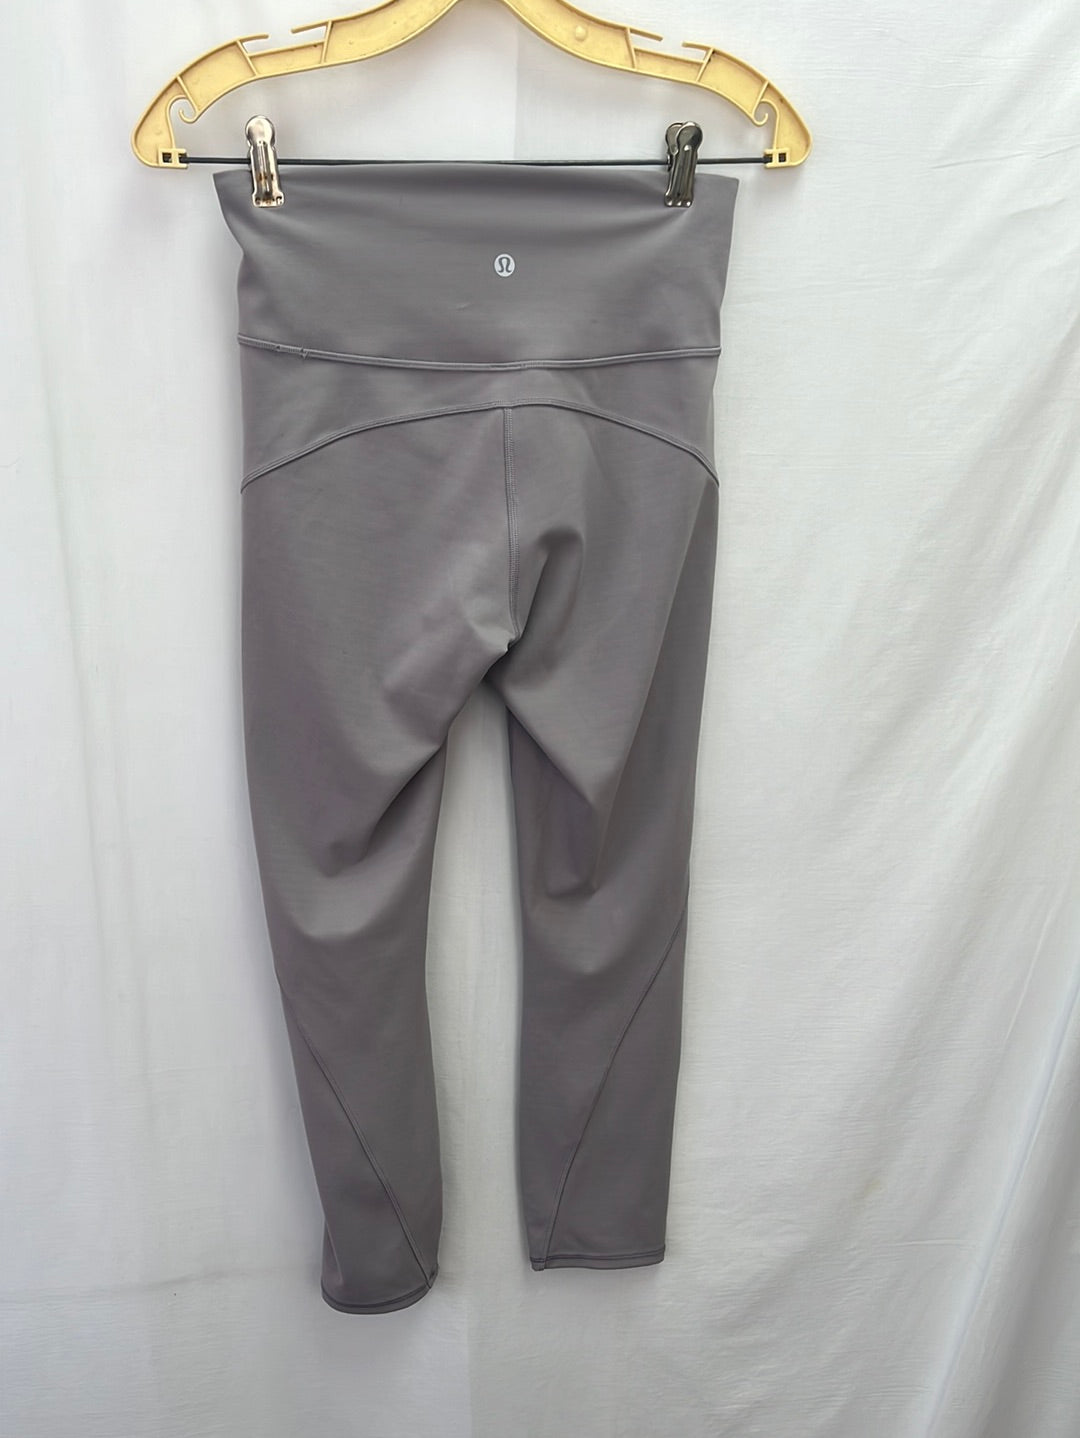 LULULEMON Grey Yoga Pants/Leggings with Back Inside Pocket -- Size 6